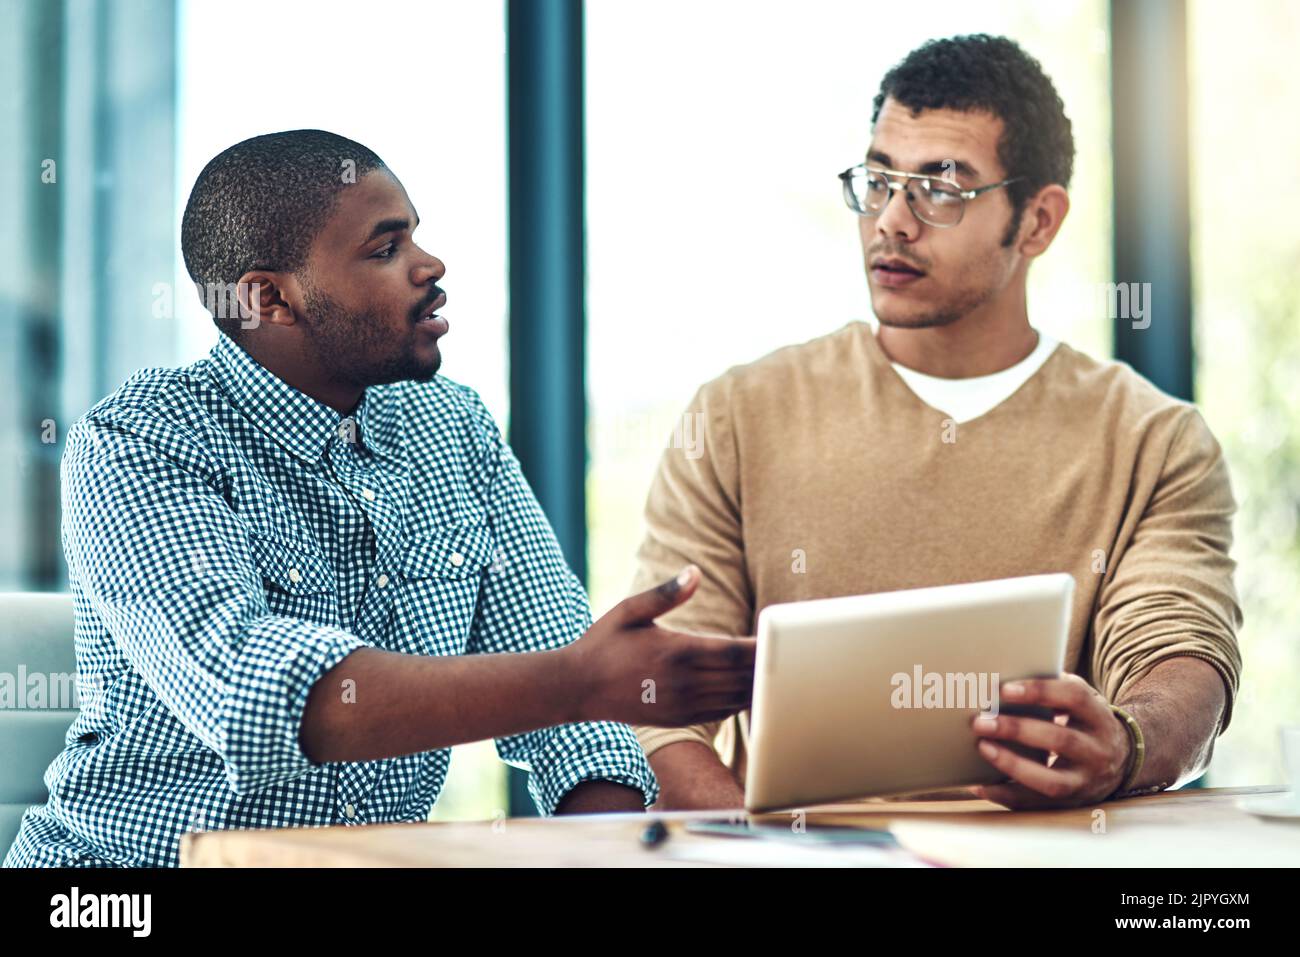 Cet outil nous fait gagner du temps. Deux jeunes concepteurs discutent de quelque chose sur une tablette numérique. Banque D'Images